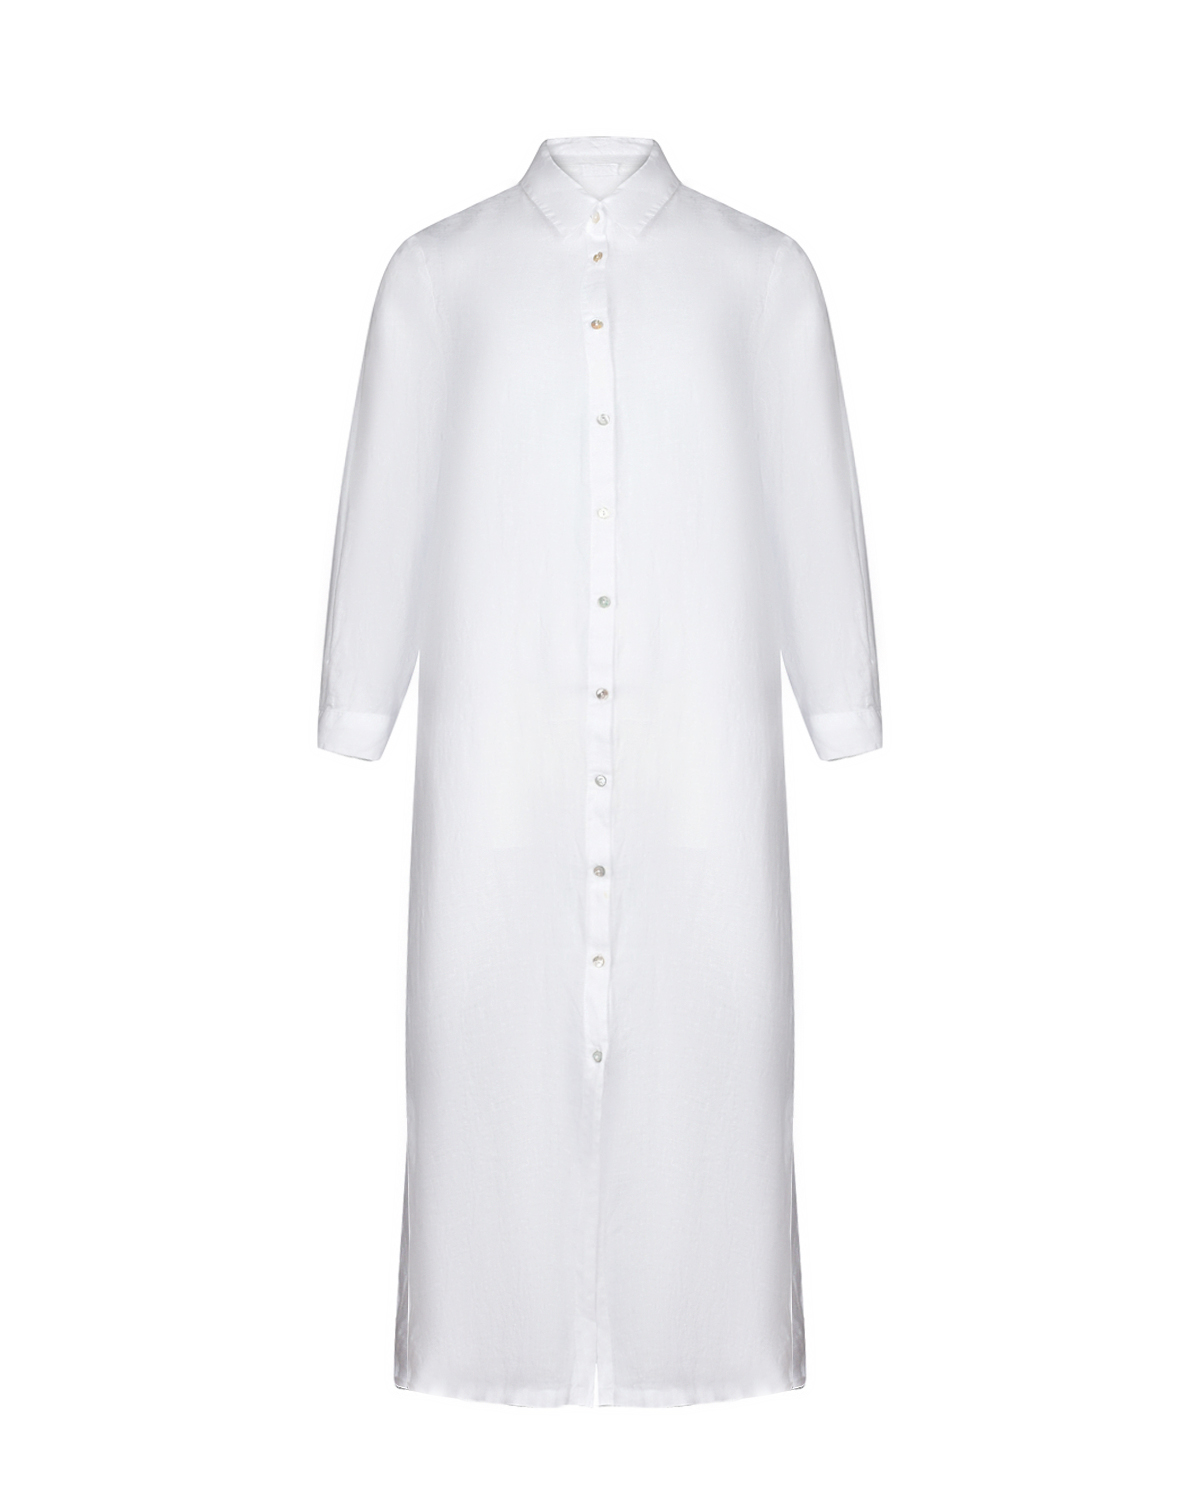 Платье-рубашка с разрезами по бокам, белое 120% Lino, размер 48, цвет белый - фото 1